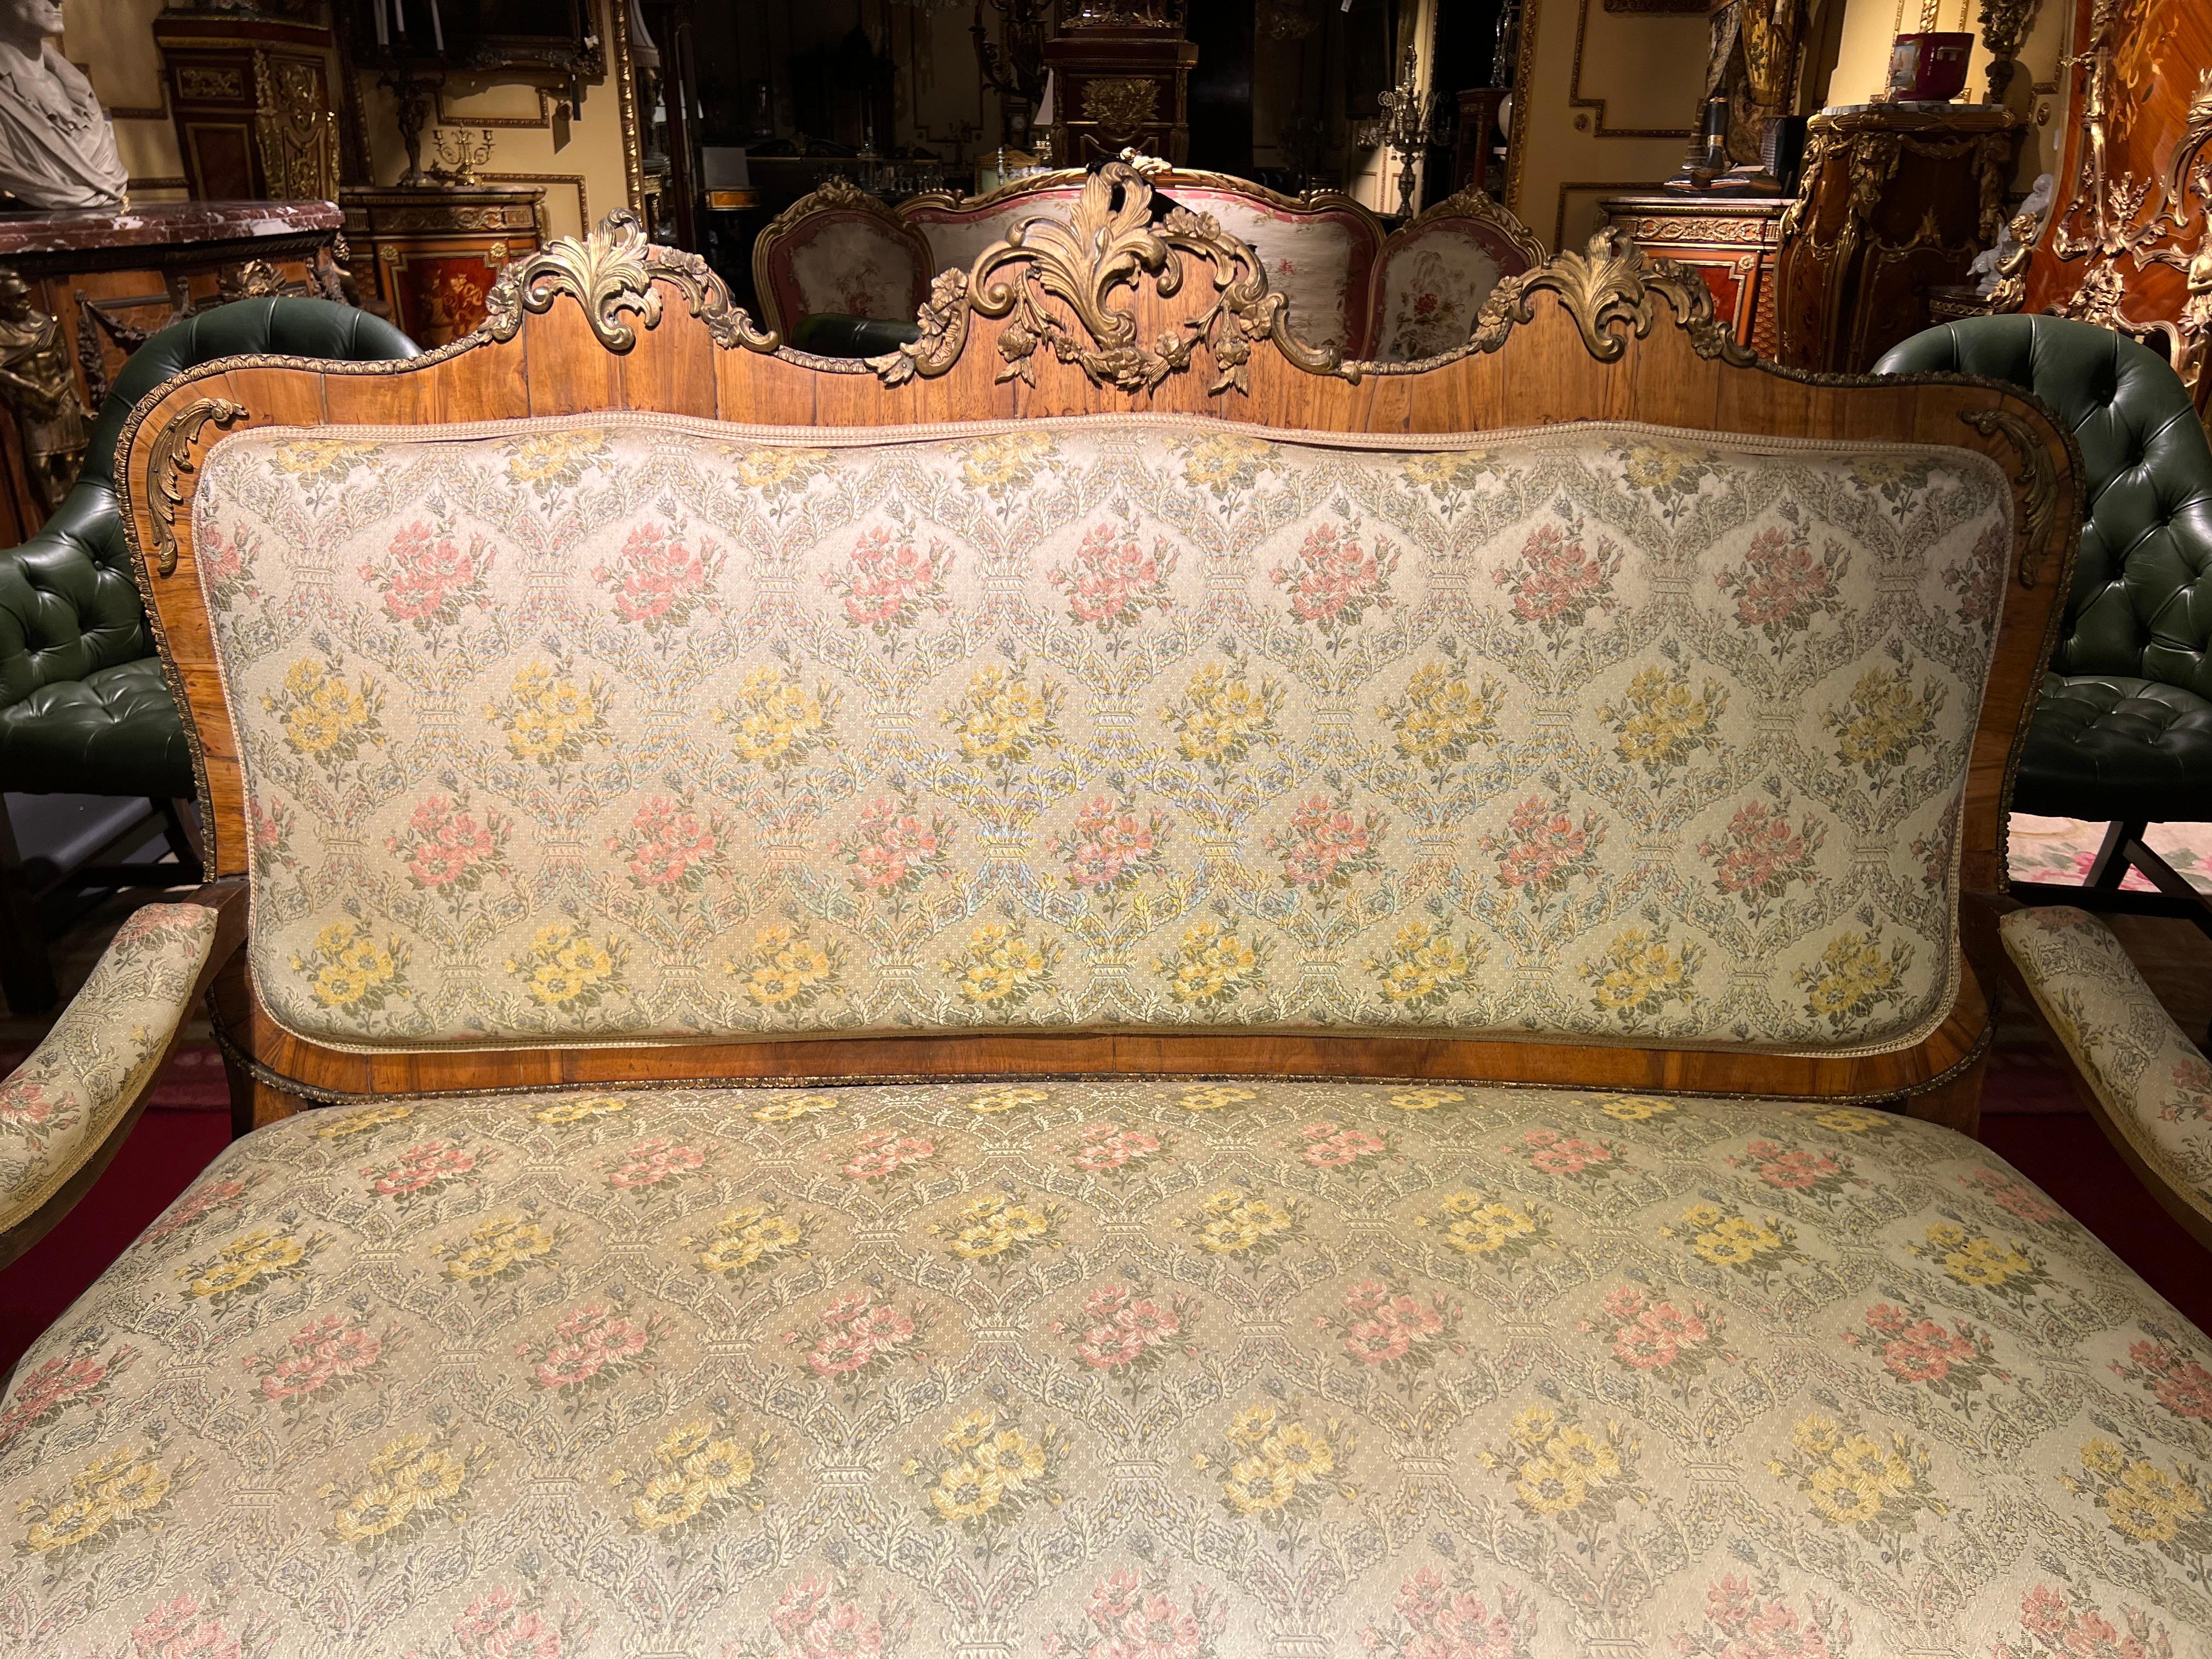 seltenes antikes Barocksofa aus der Zeit um 1880 mit Bronzebeschlägen. Massivholz mit Walnussfurnier. Schöne geschwungene Form mit vergoldeten Bronzebeschlägen